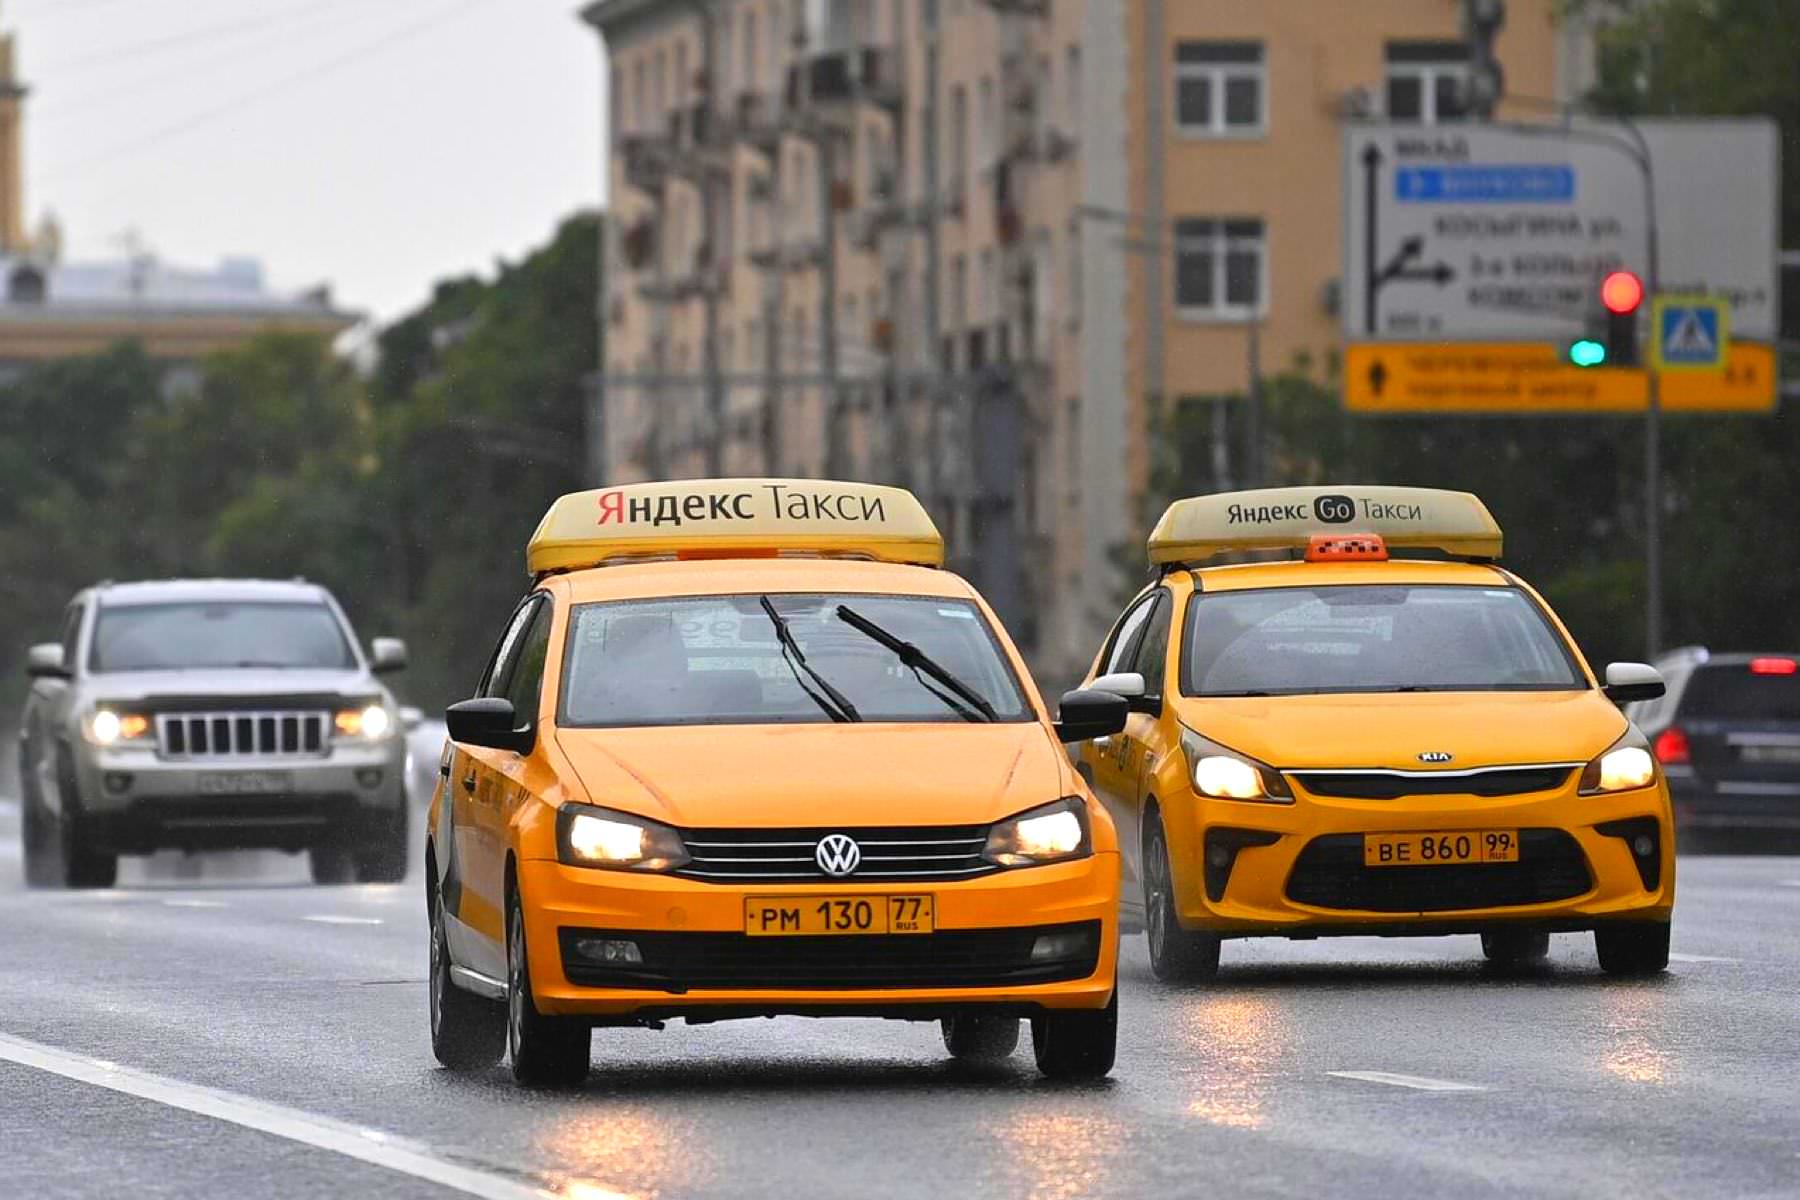 «Яндекс Такси» ввело новые требования для таксистов и пассажиров